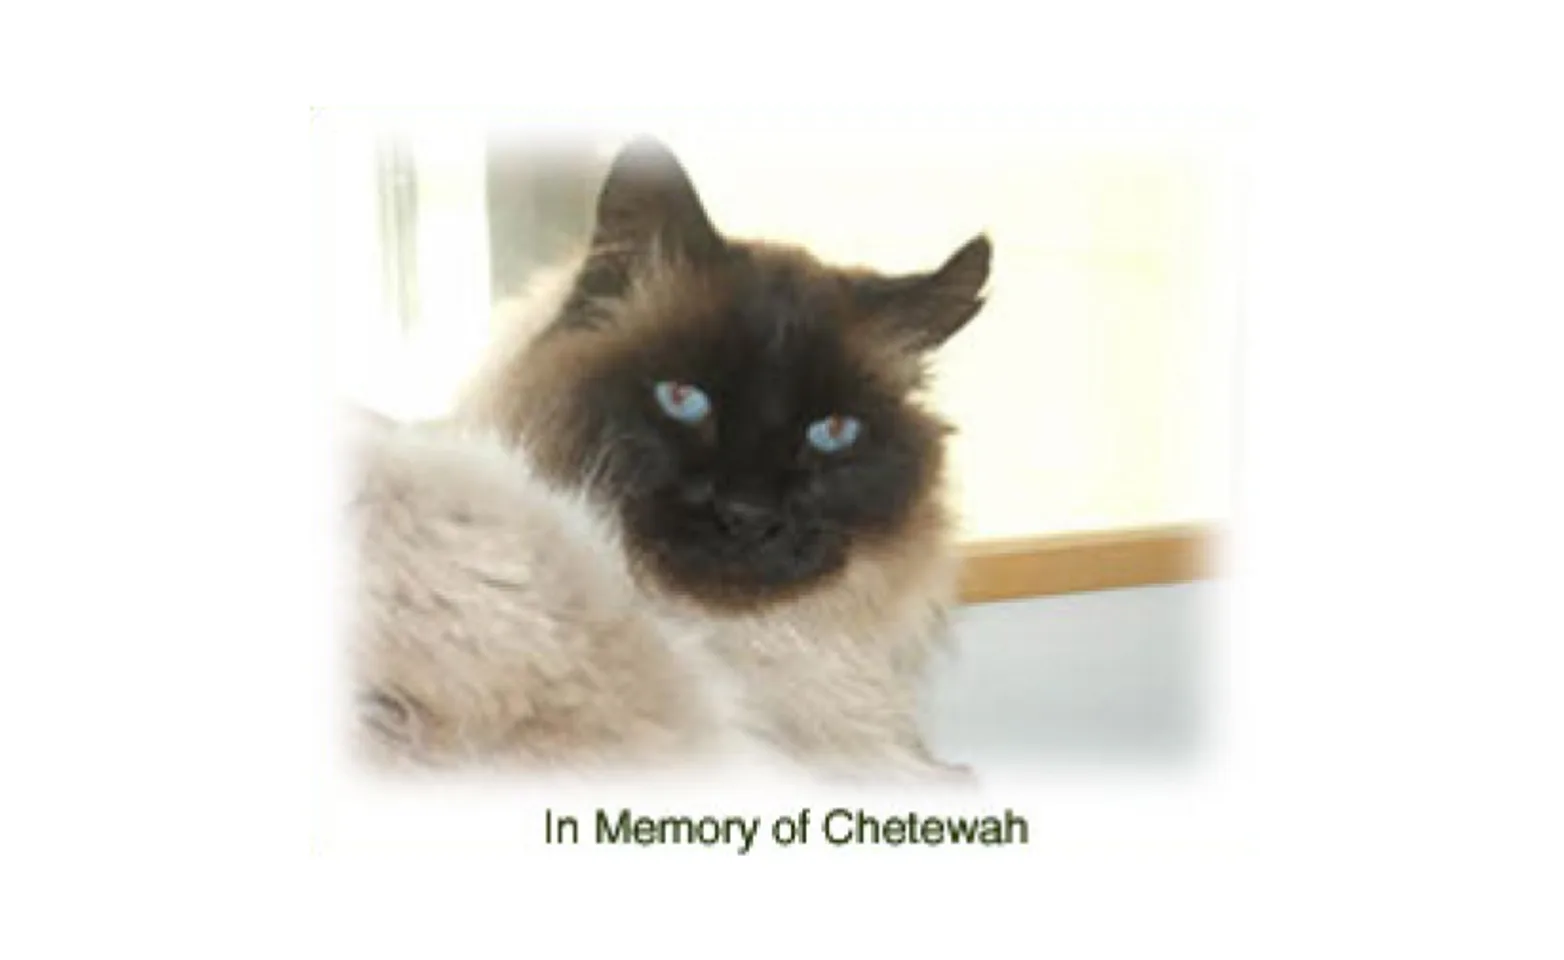 A cat named Chetewah